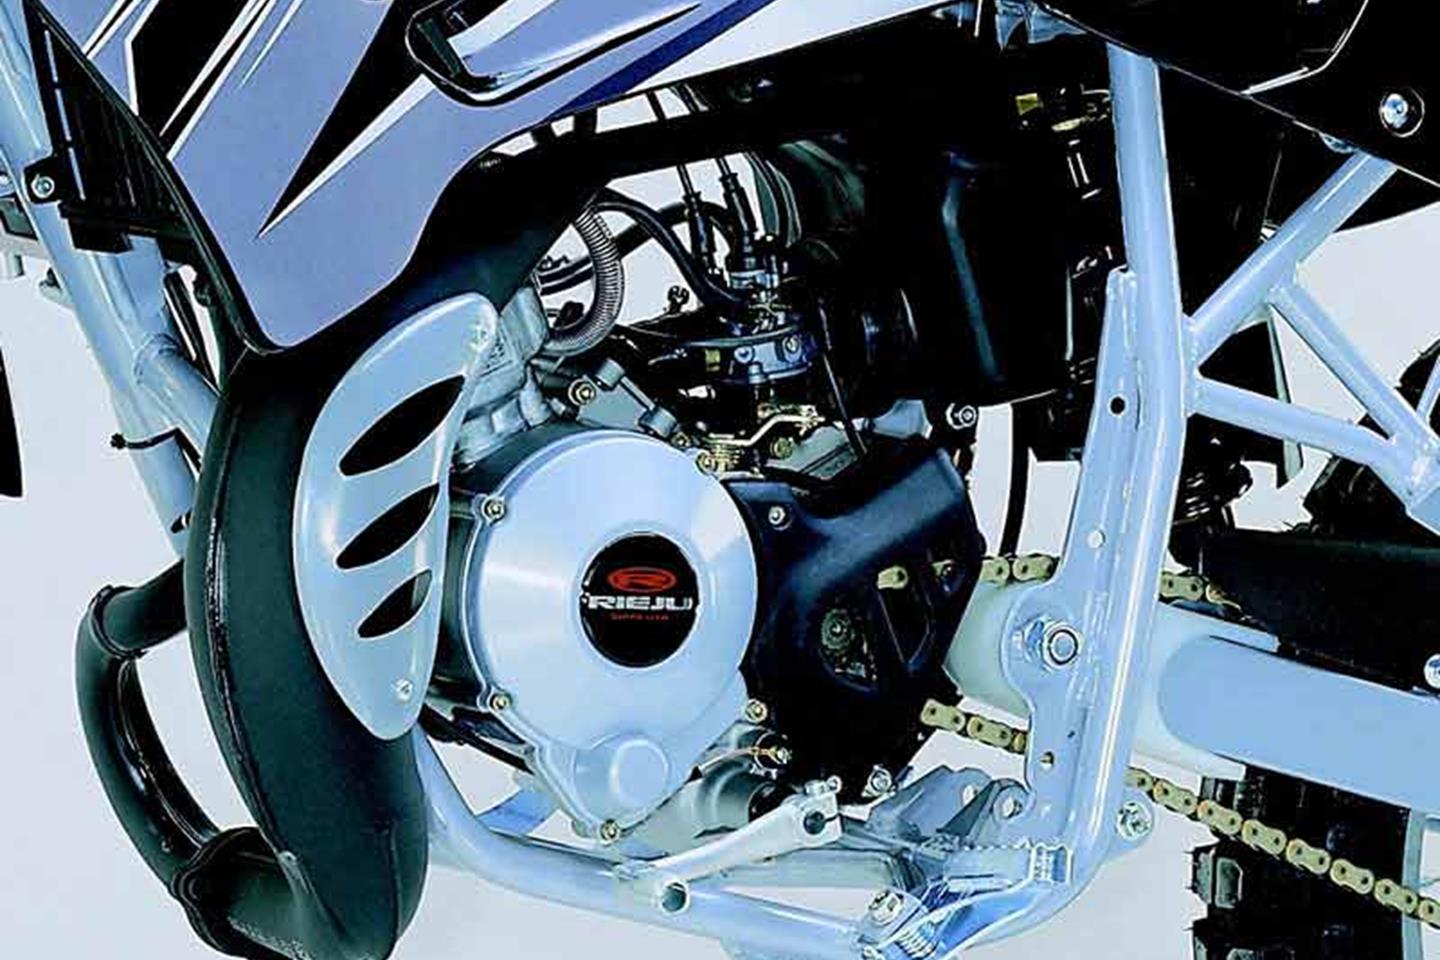 Simmering Set 7 tlg Minarelli AM6 Motor NEU * 2T Rieju RR 50 